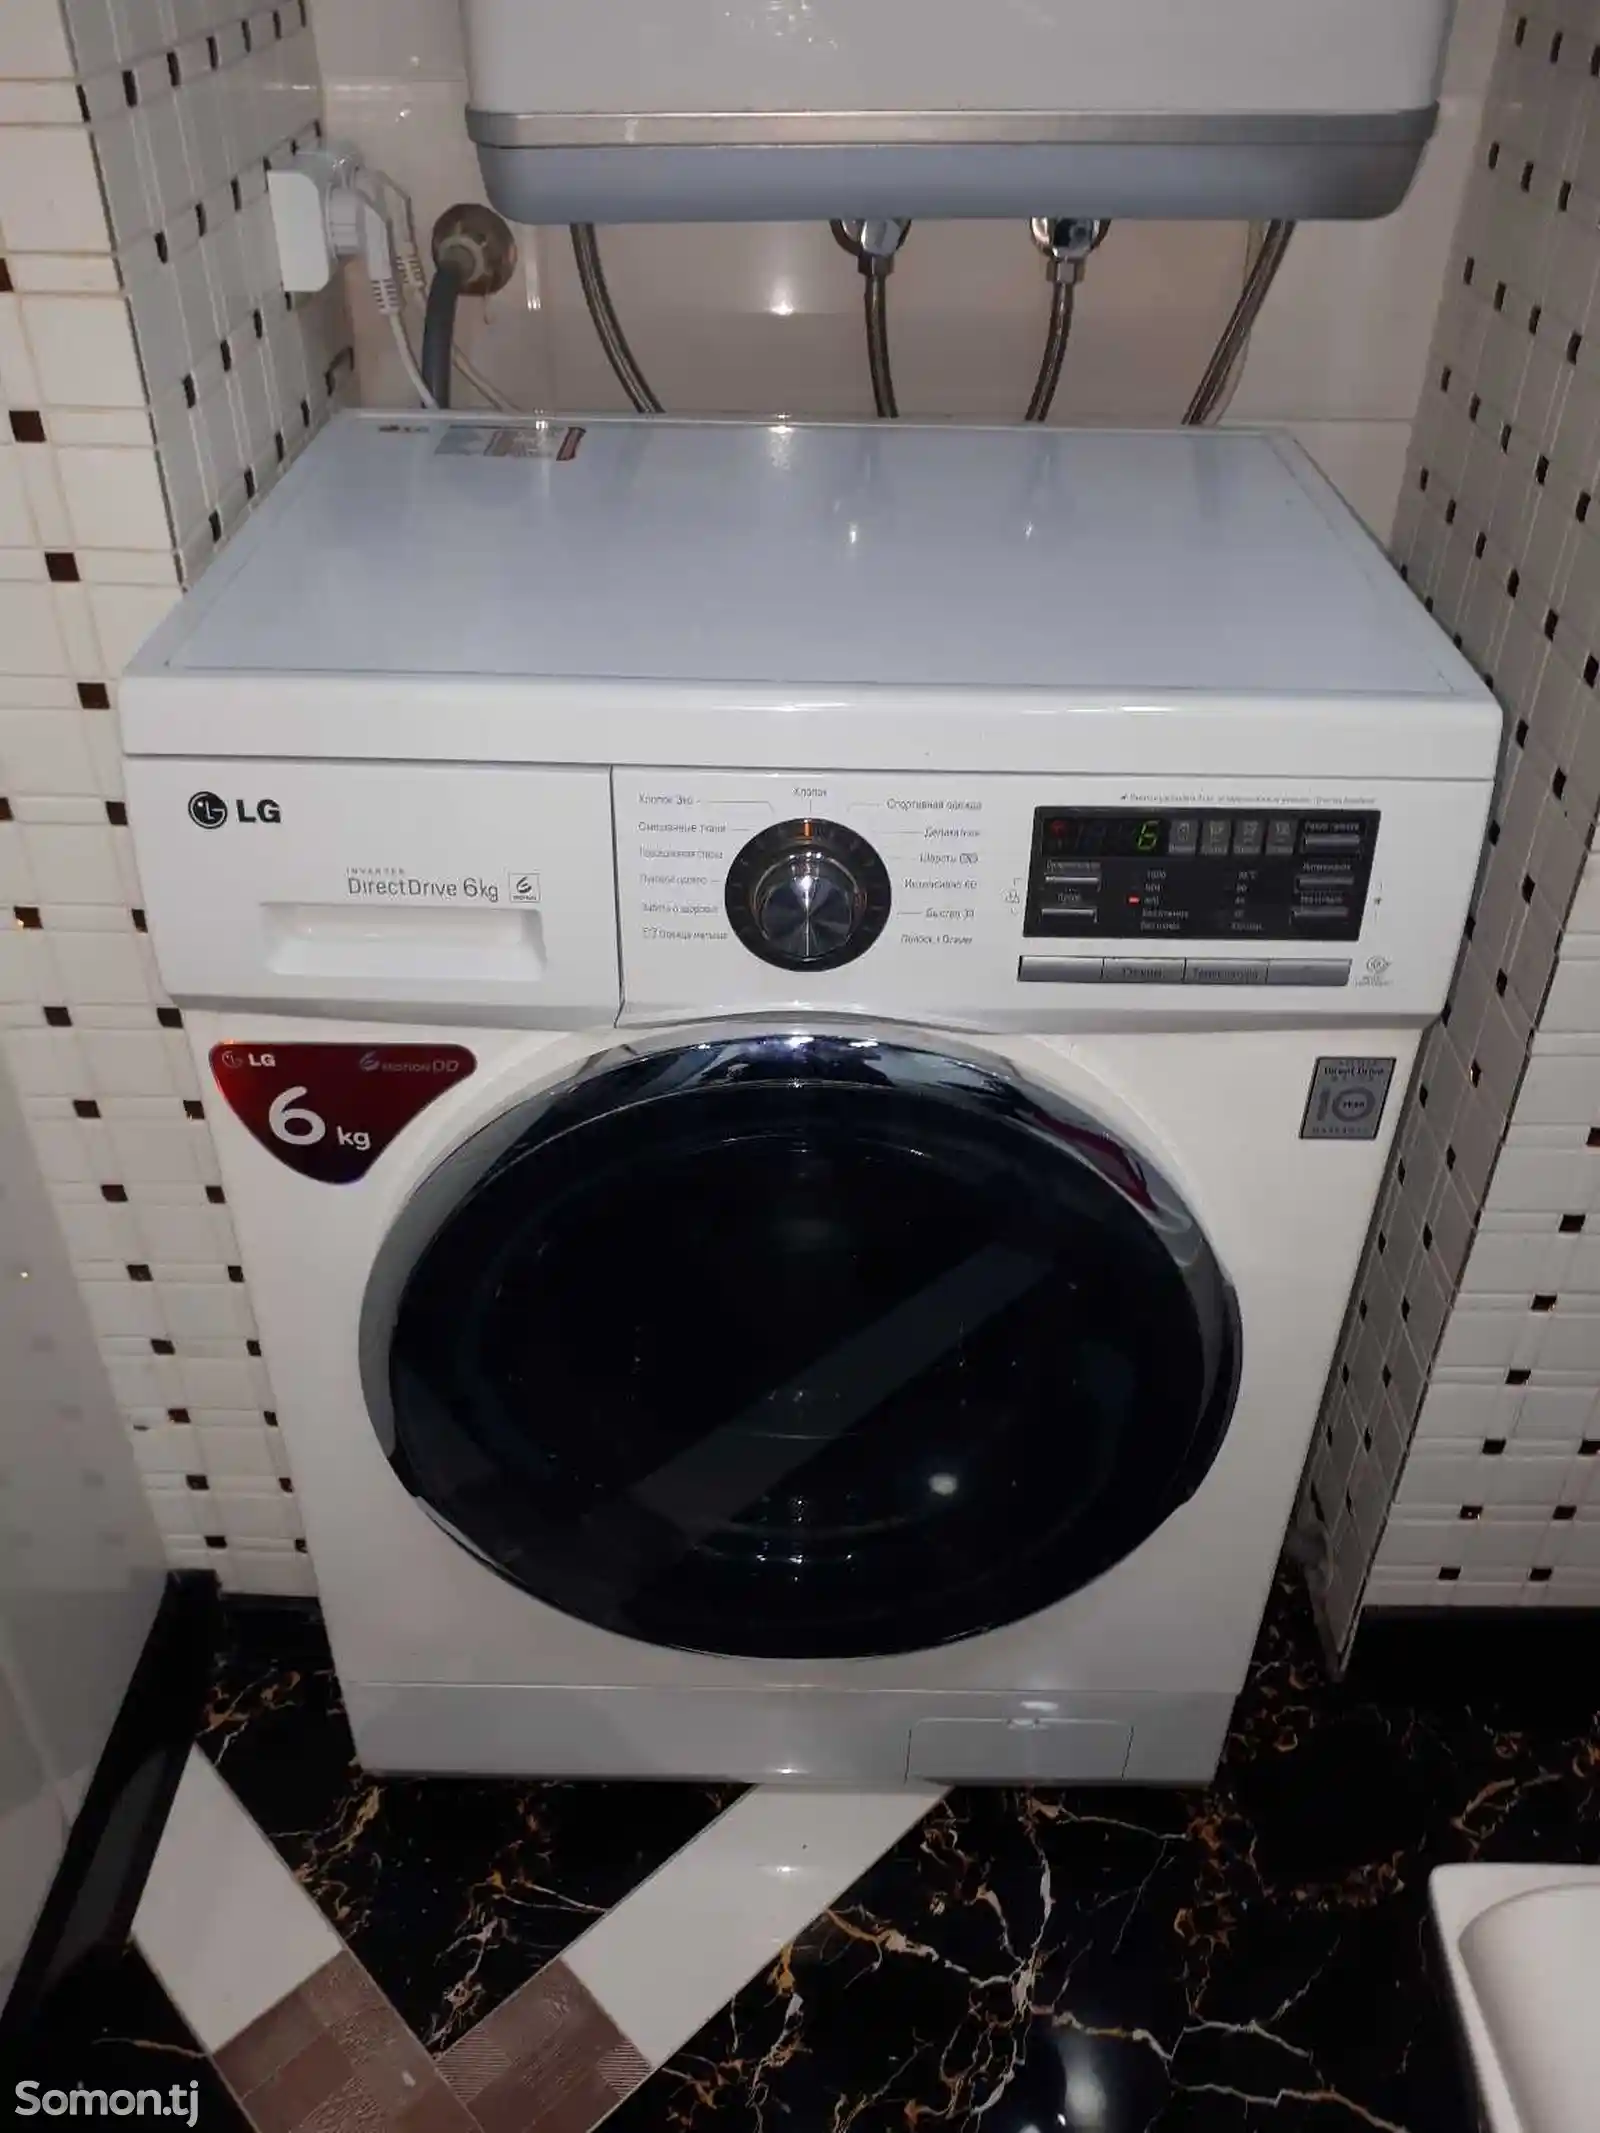 Ремонт стиральных машин-6